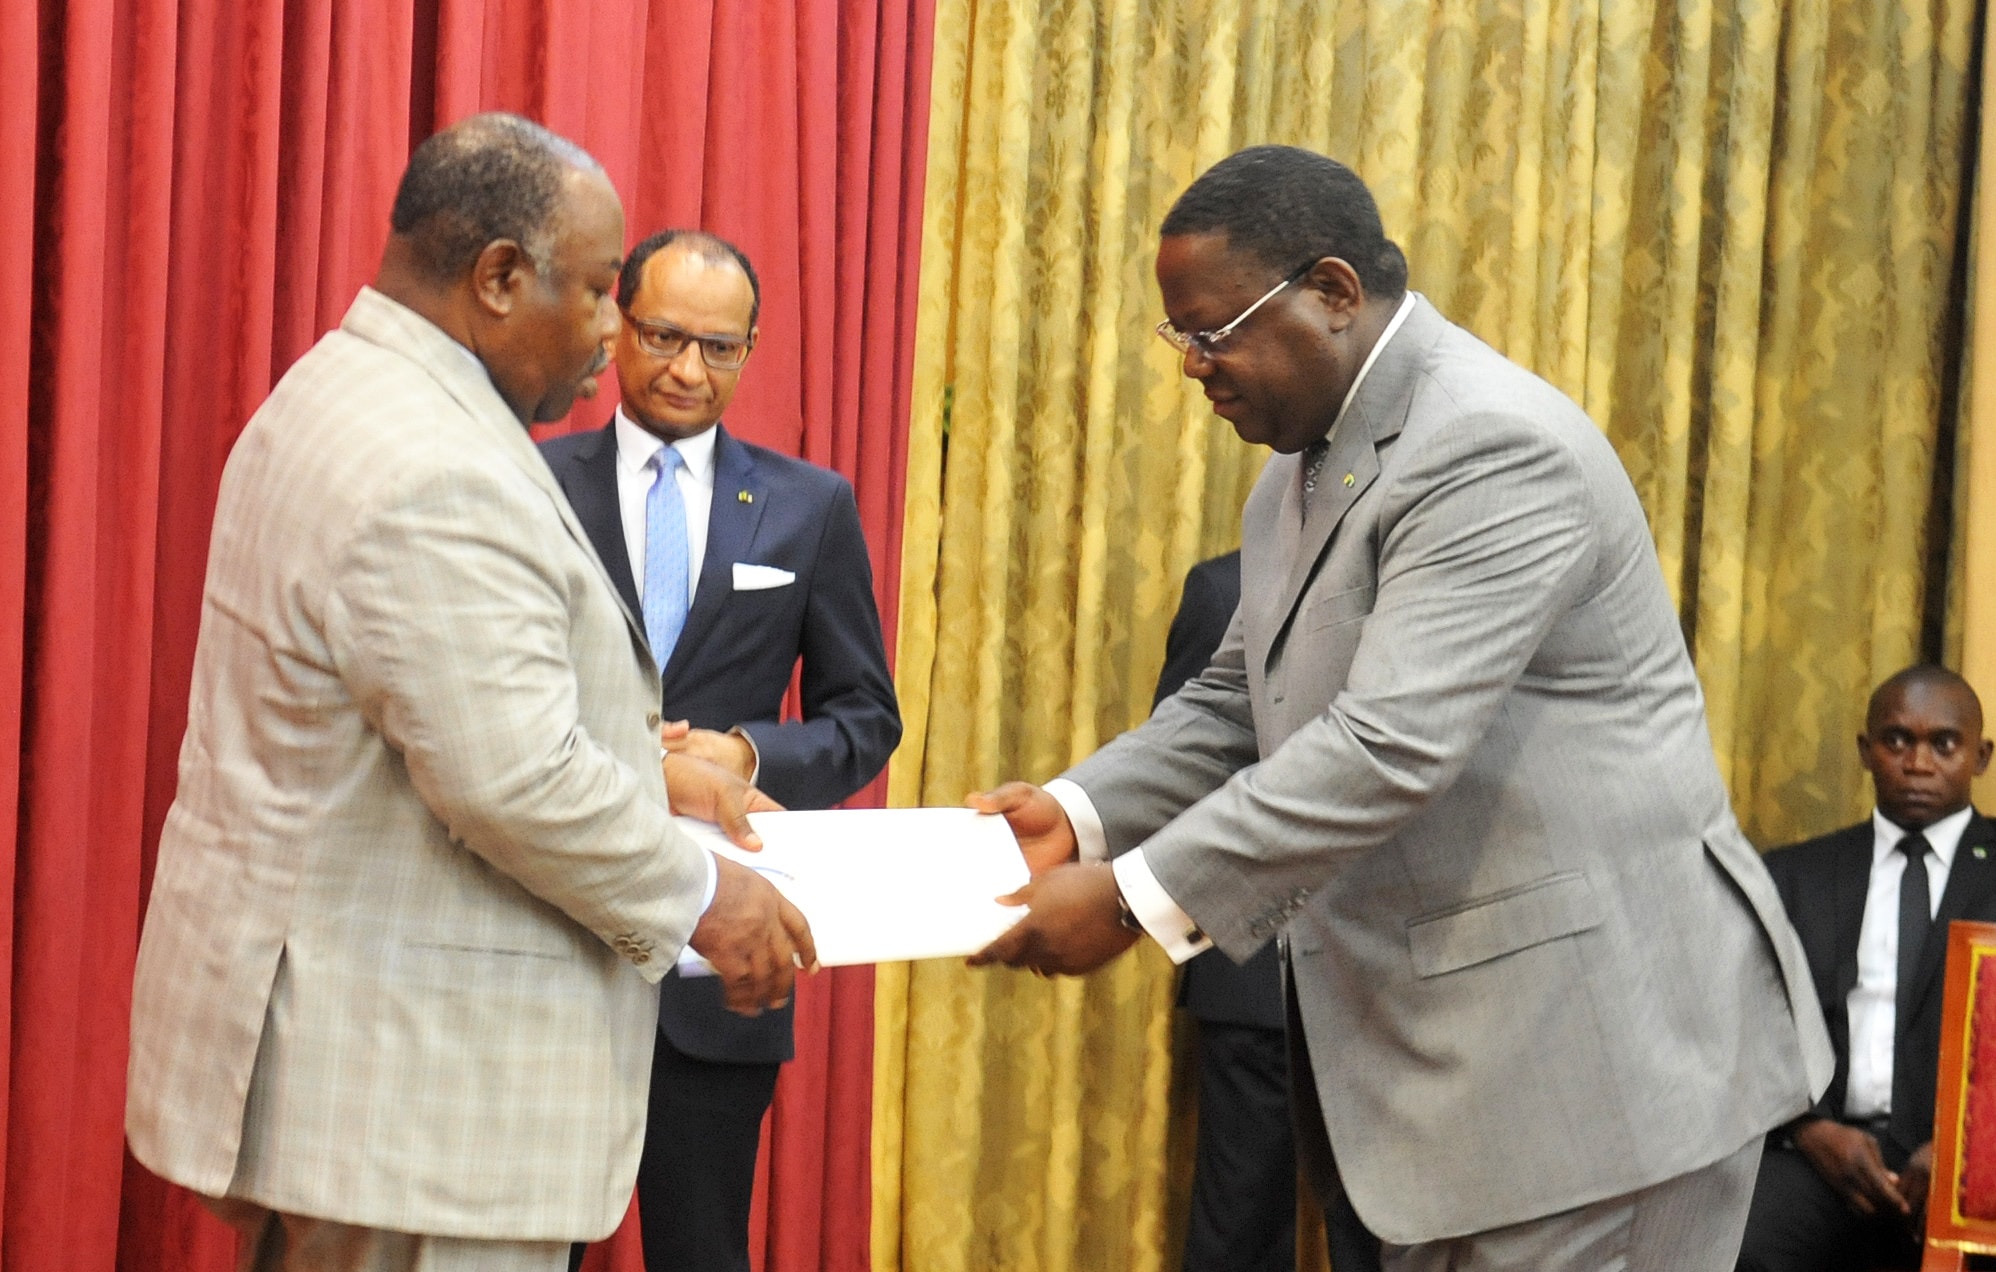 Gabon : Ali Bongo reconduit son Premier ministre après la démission du gouvernement